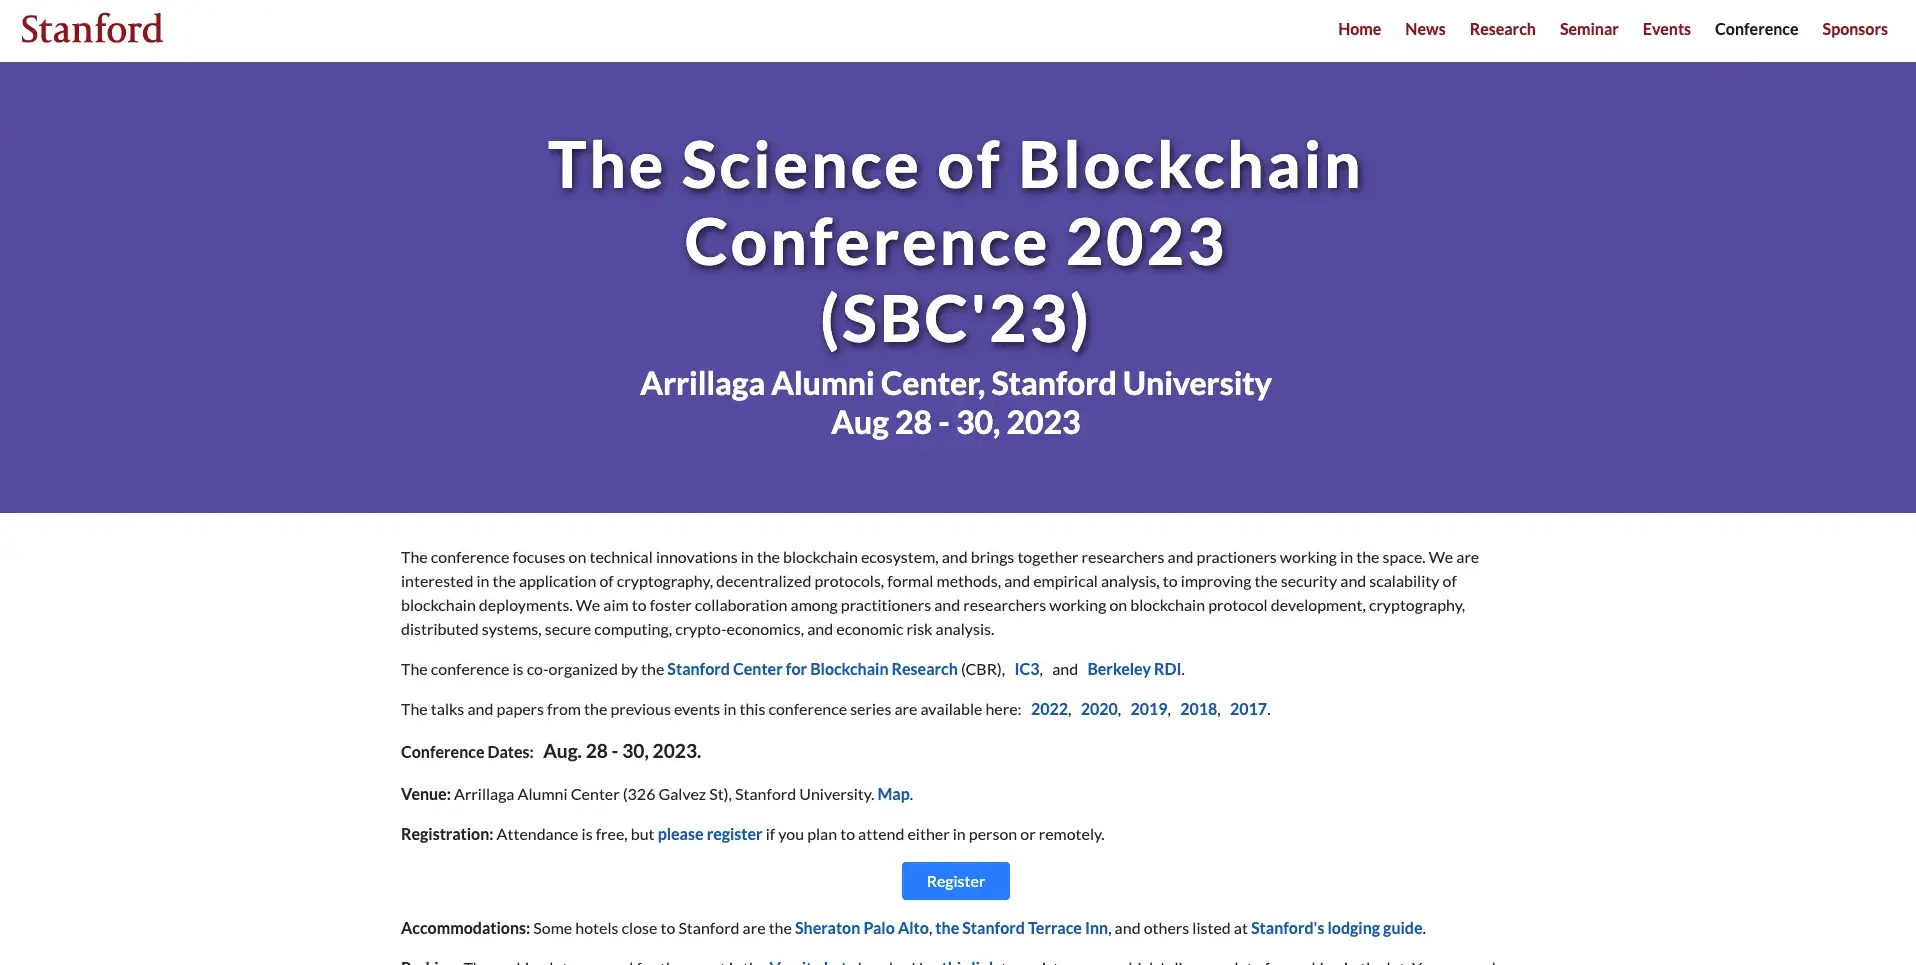 5. Die Wissenschaft der Blockchain-Konferenz